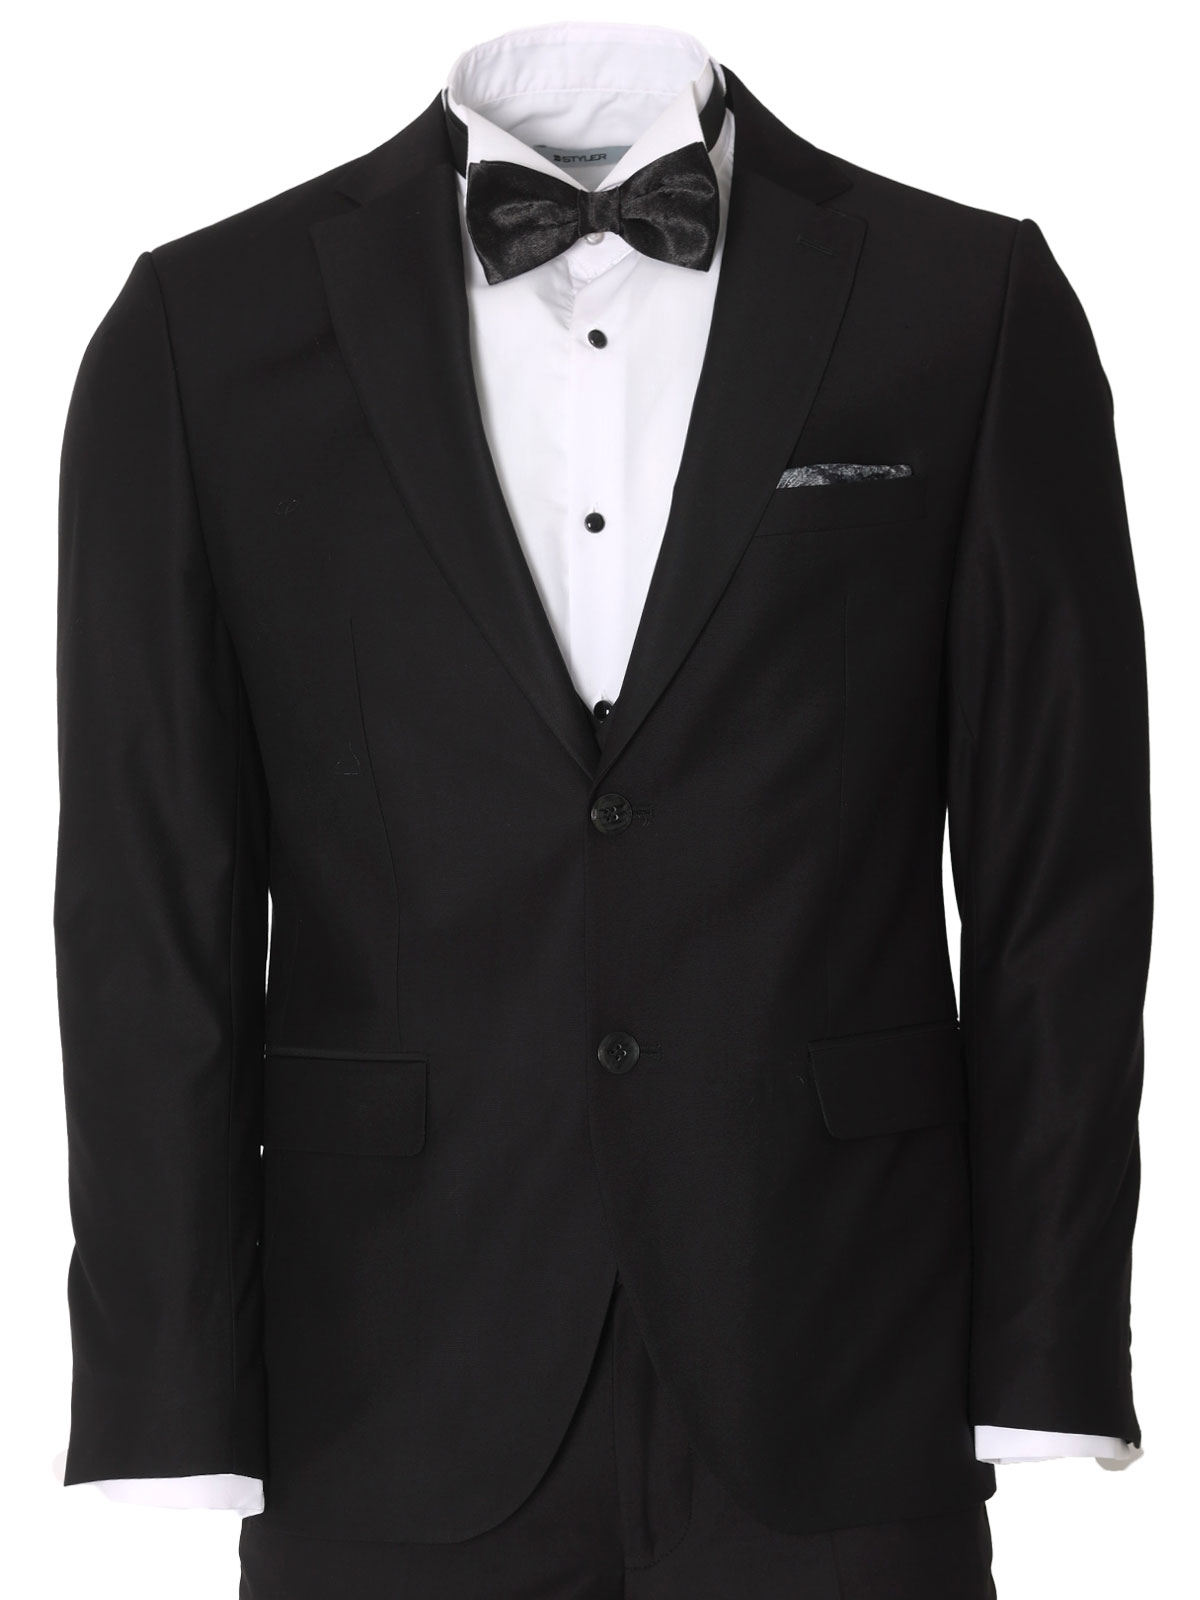 Κοστούμι σε κλασικό μαύρο χρώμα - 68074 € 236.22 img3